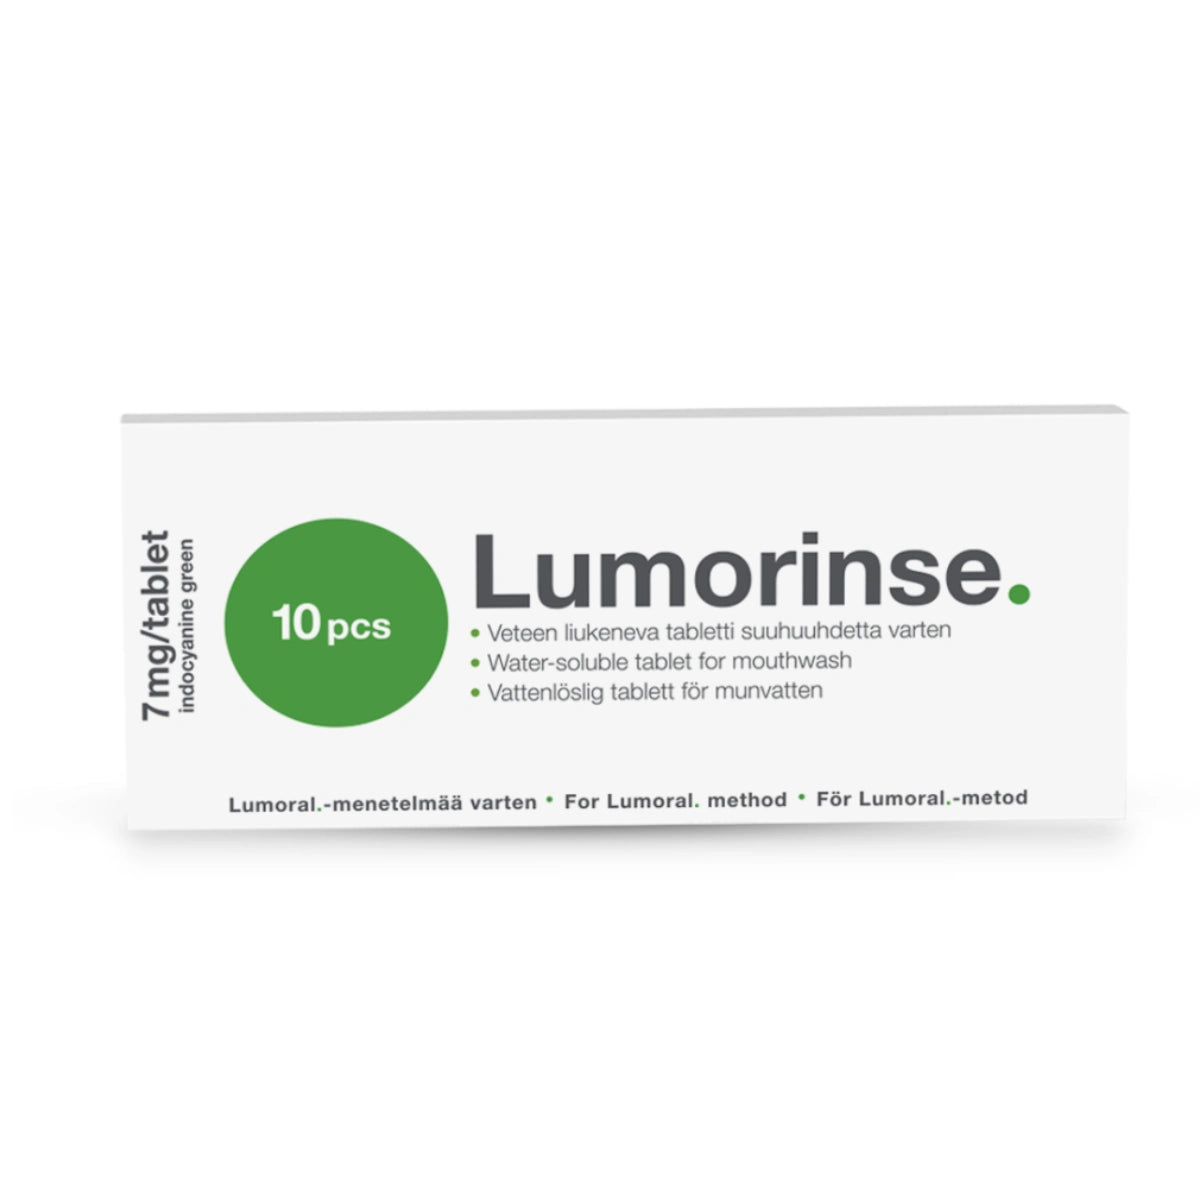 LUMORINSE Suuhuuhde tabletti 10 kpl Lumoral-hoitoa varten